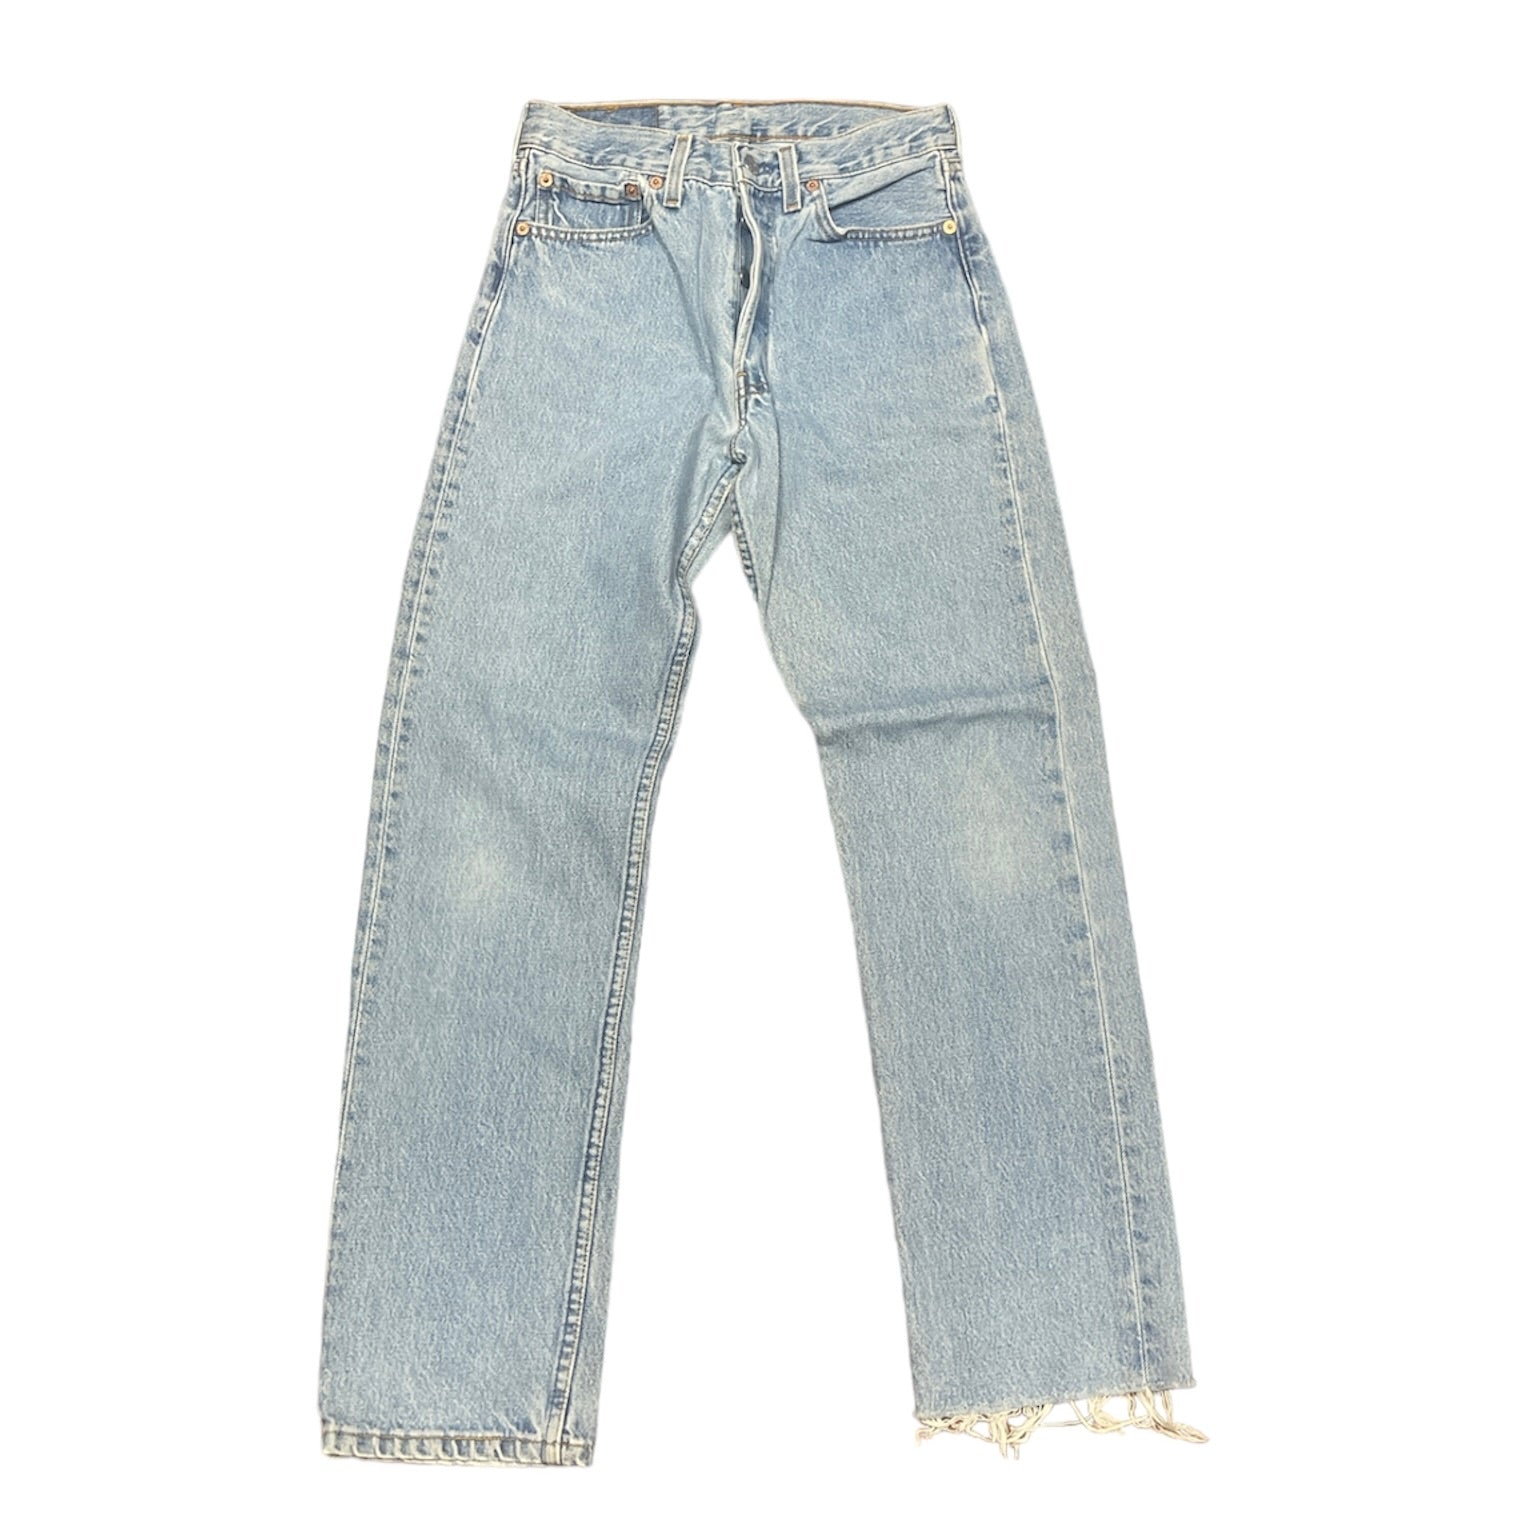 Vintage Levis 501 Blue Jeans (W28/L30)(W)